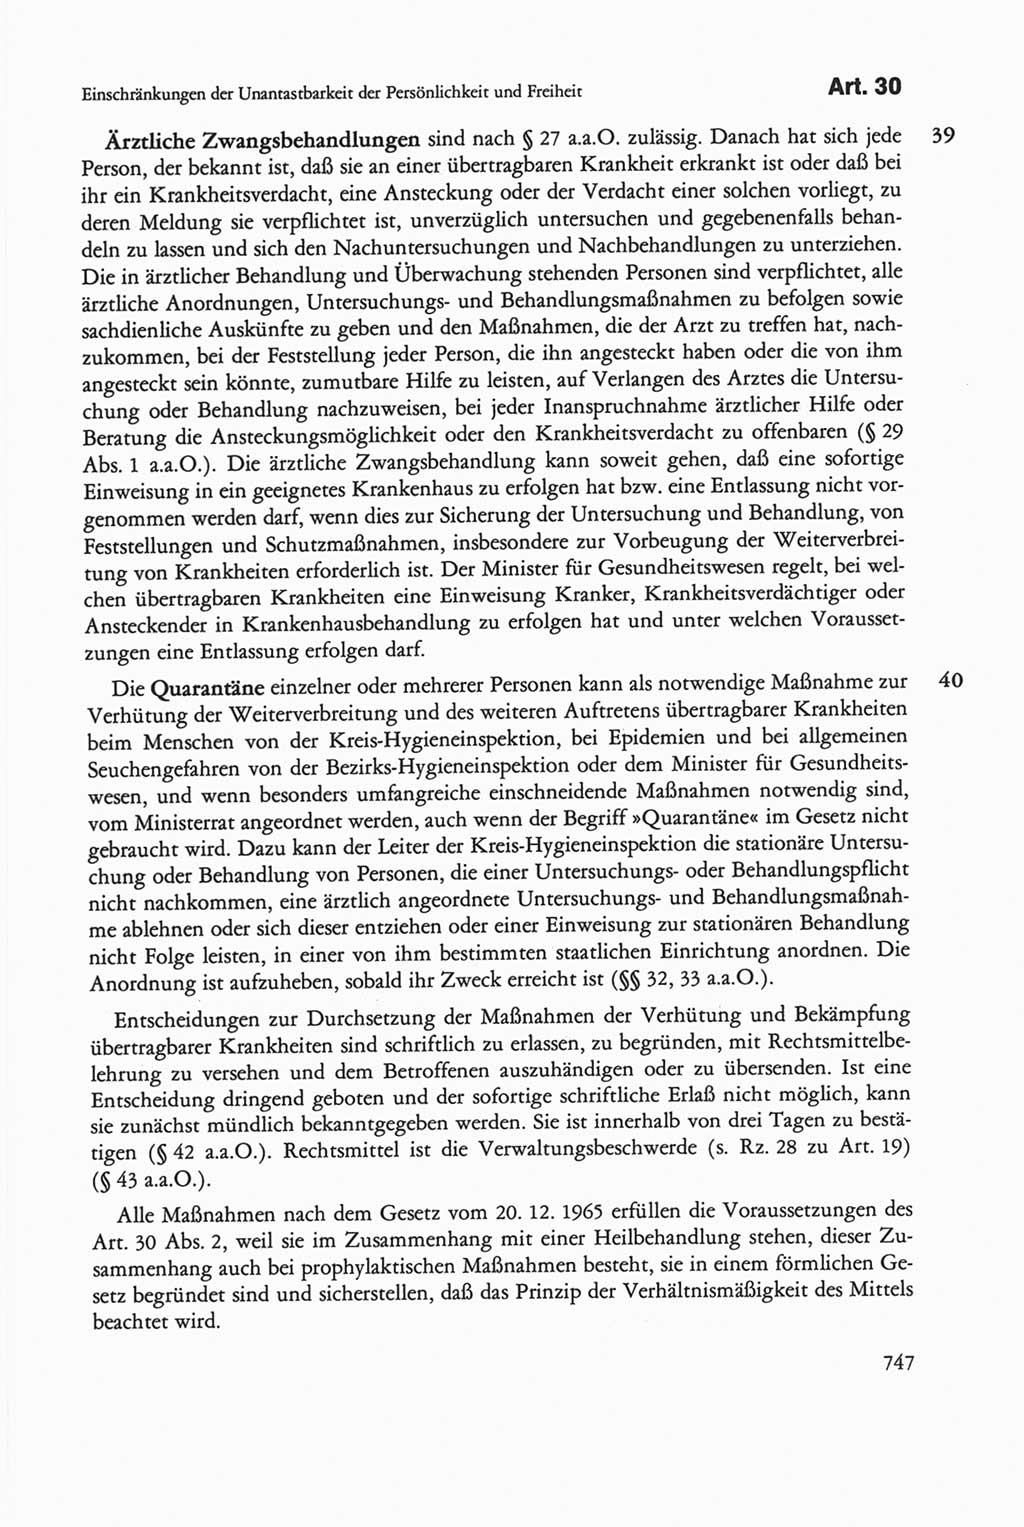 Die sozialistische Verfassung der Deutschen Demokratischen Republik (DDR), Kommentar mit einem Nachtrag 1997, Seite 747 (Soz. Verf. DDR Komm. Nachtr. 1997, S. 747)